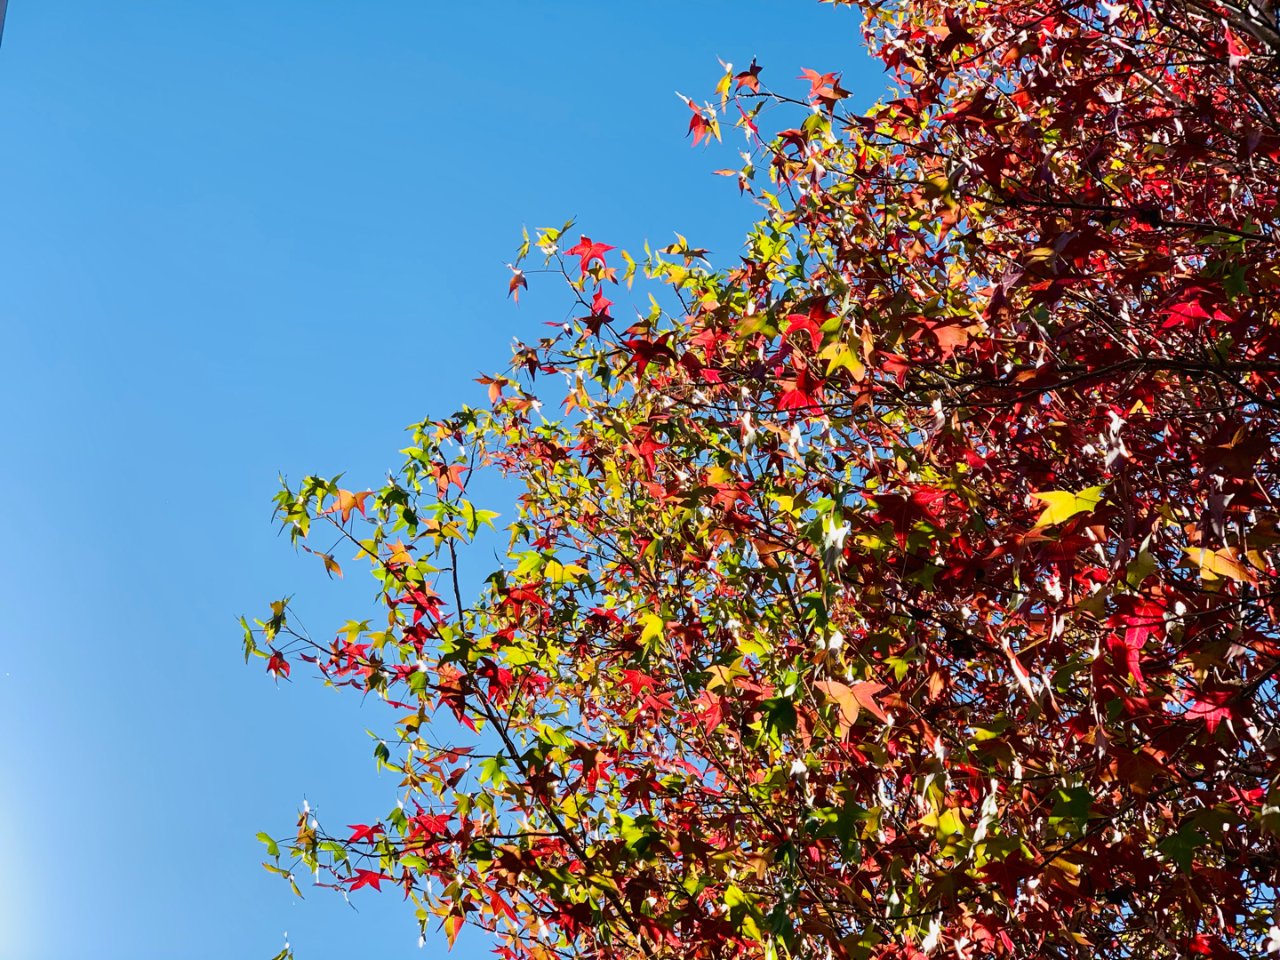 秋天来了，树叶红了，树上的石榴熟了...